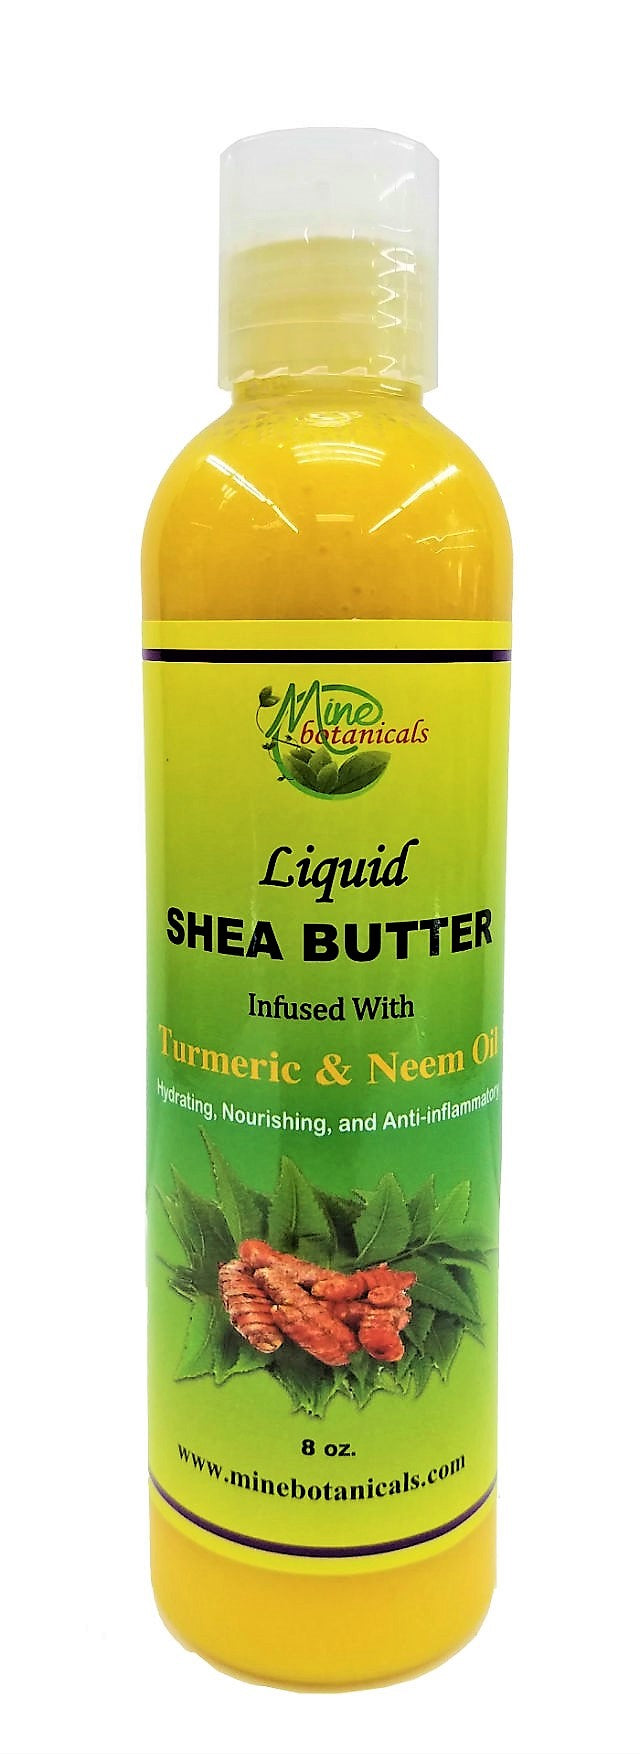 Turmeric & Neem Liquid shea butter